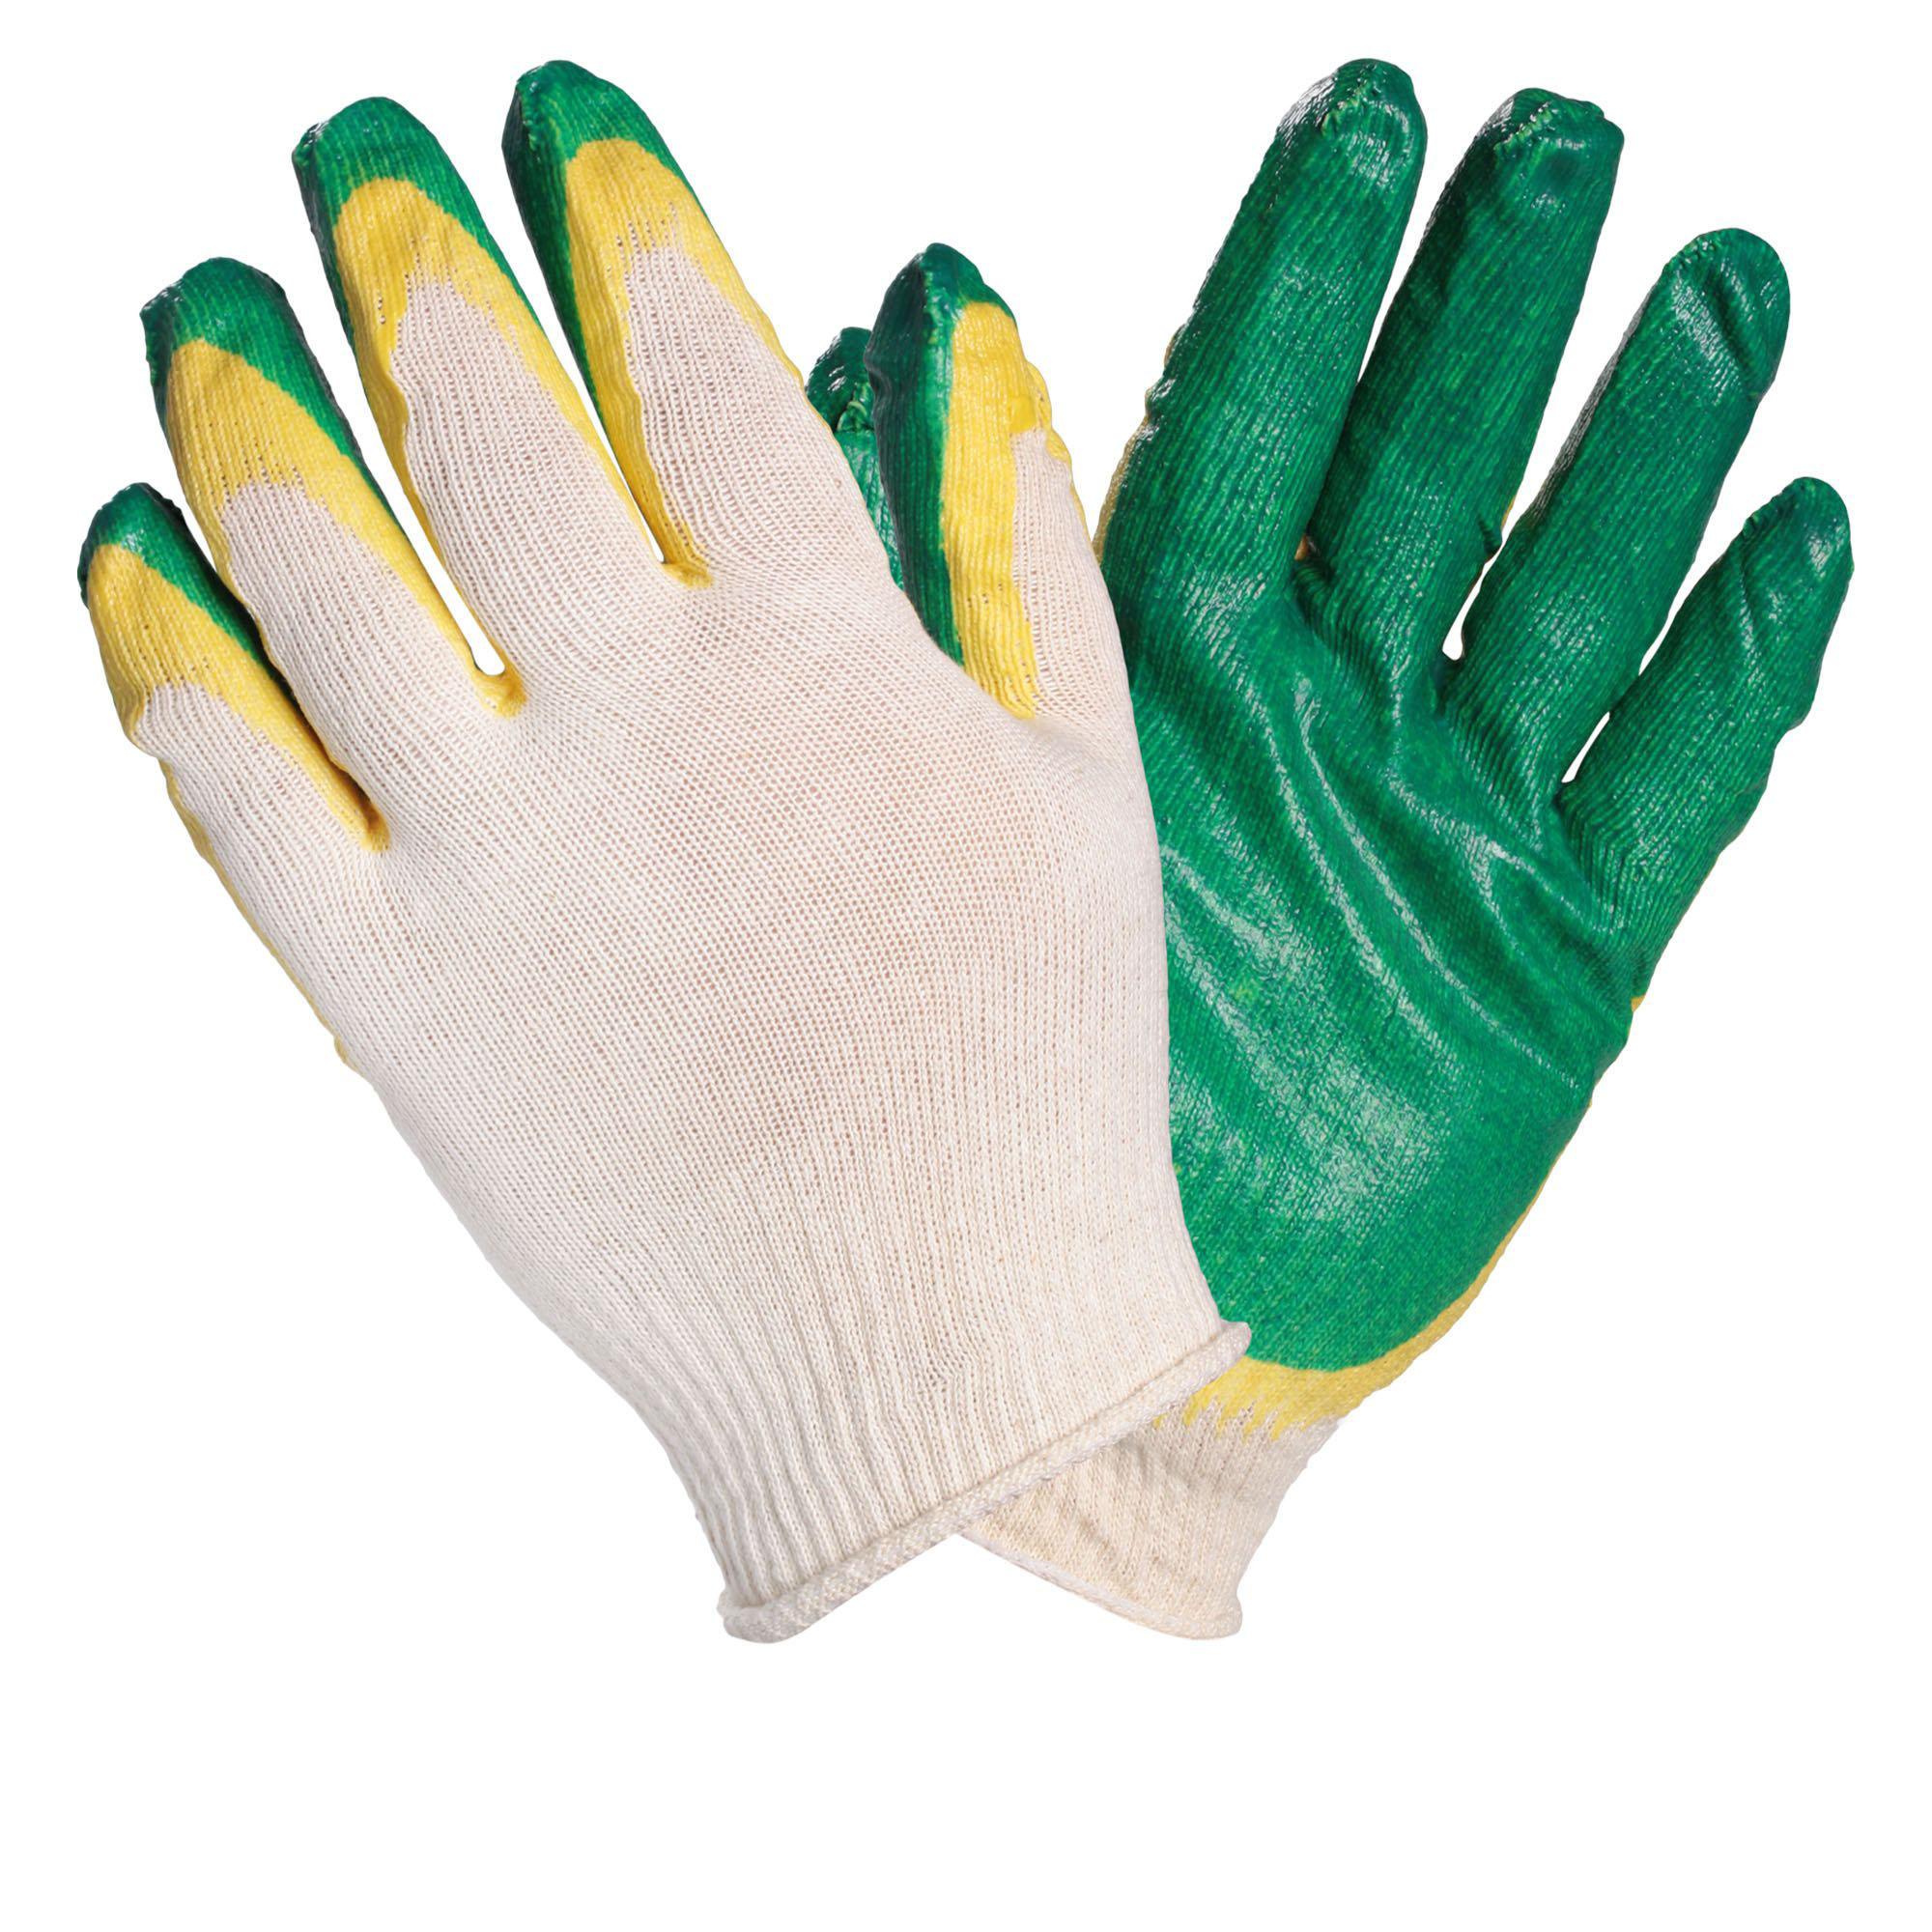 фото Airline awgc08 перчатки хб с двойным латексным покрытием ладони, зеленые (1 пара)